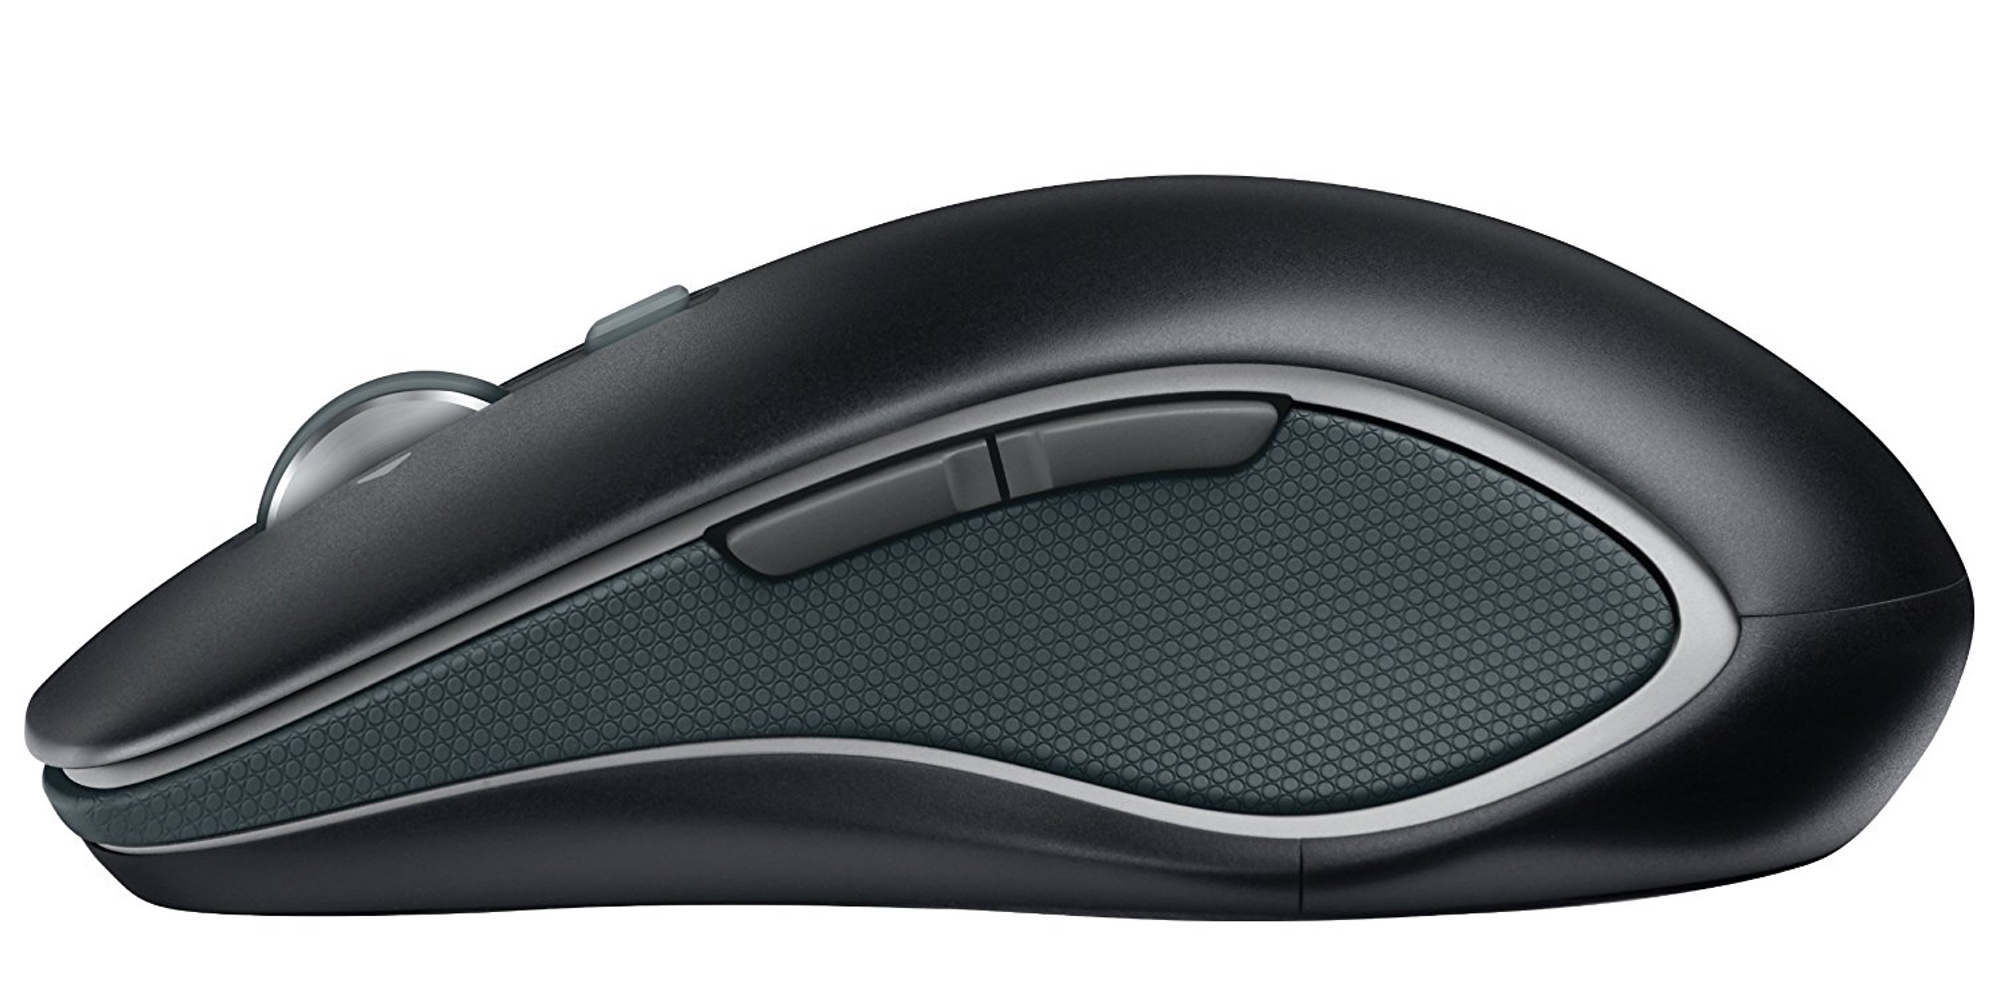 Logitech M560 Mouse $14 (Reg. $27)